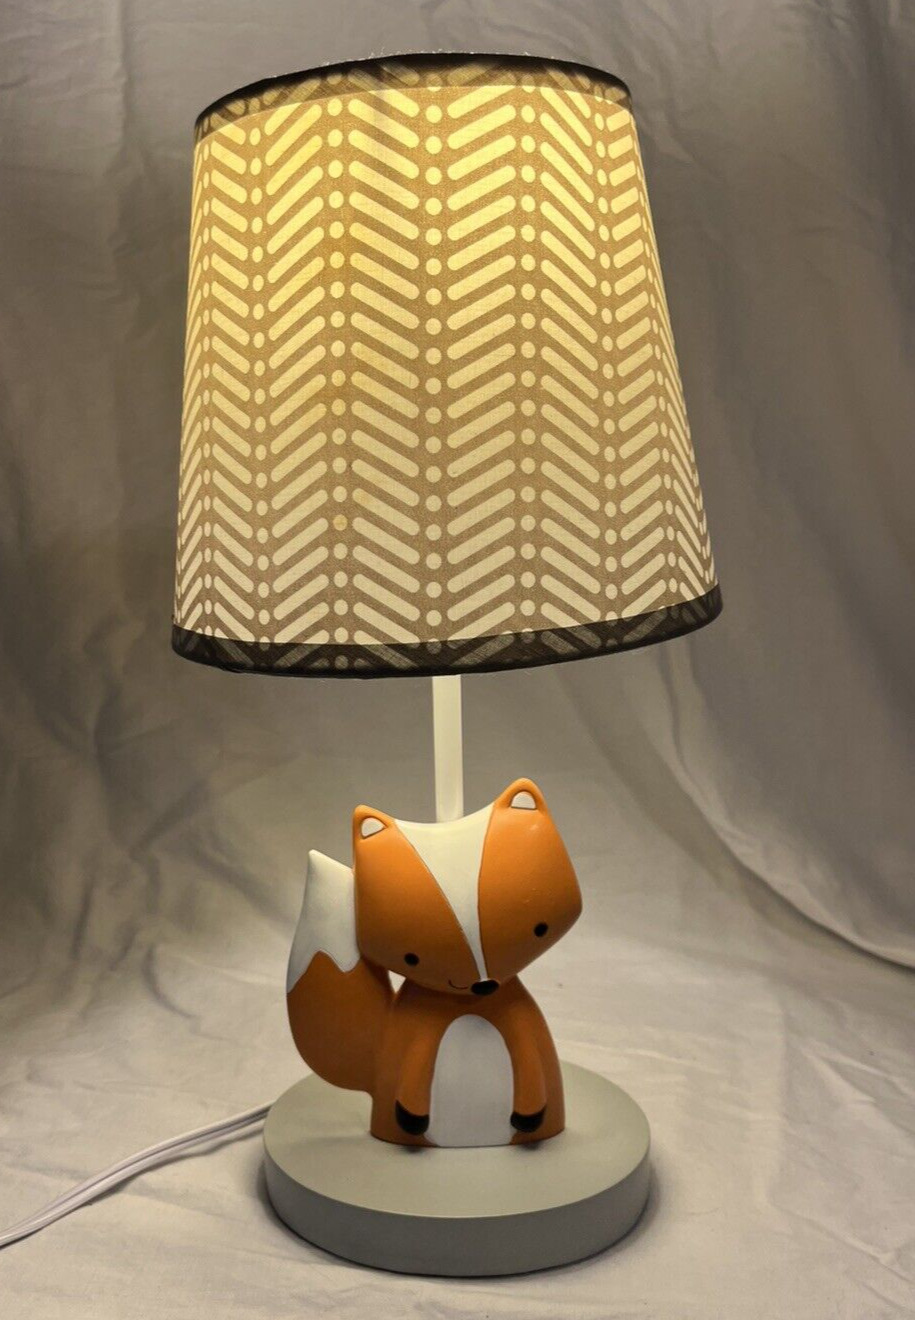 Lambs & Ivy Acorn Baby Fox Woodland Table Lamp & Shade, Nursery NightLight, EUC